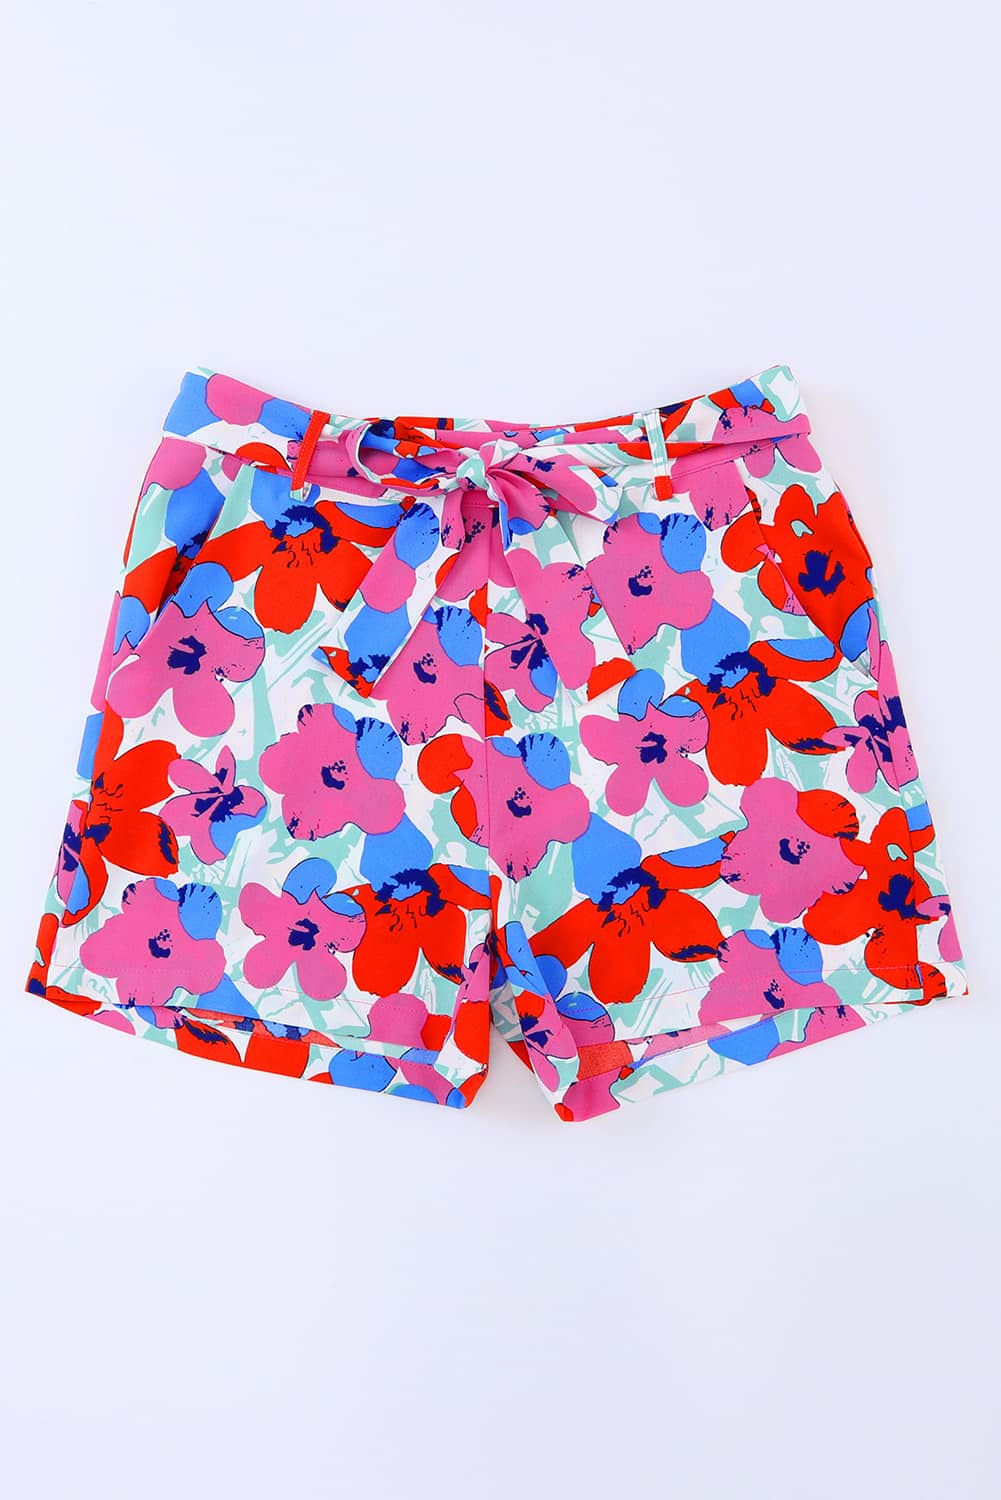 Azura Exchange Belted Floral Print Shorts - 8 US